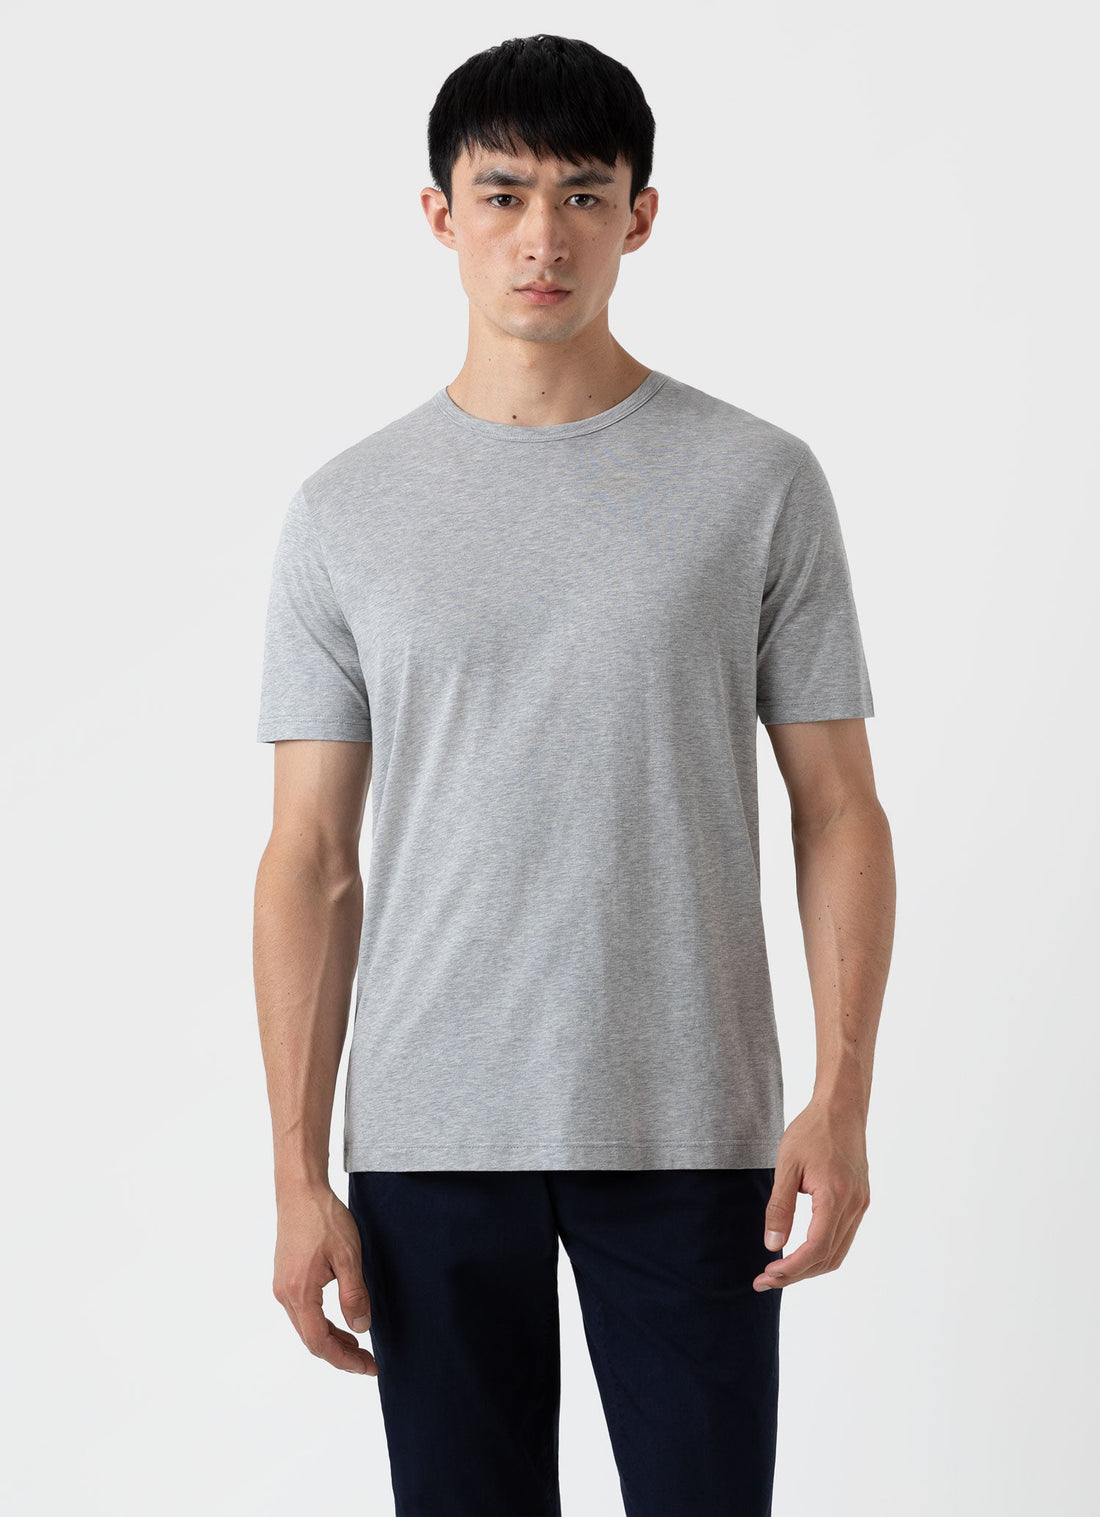 Men's Classic T-shirt in Grey Melange